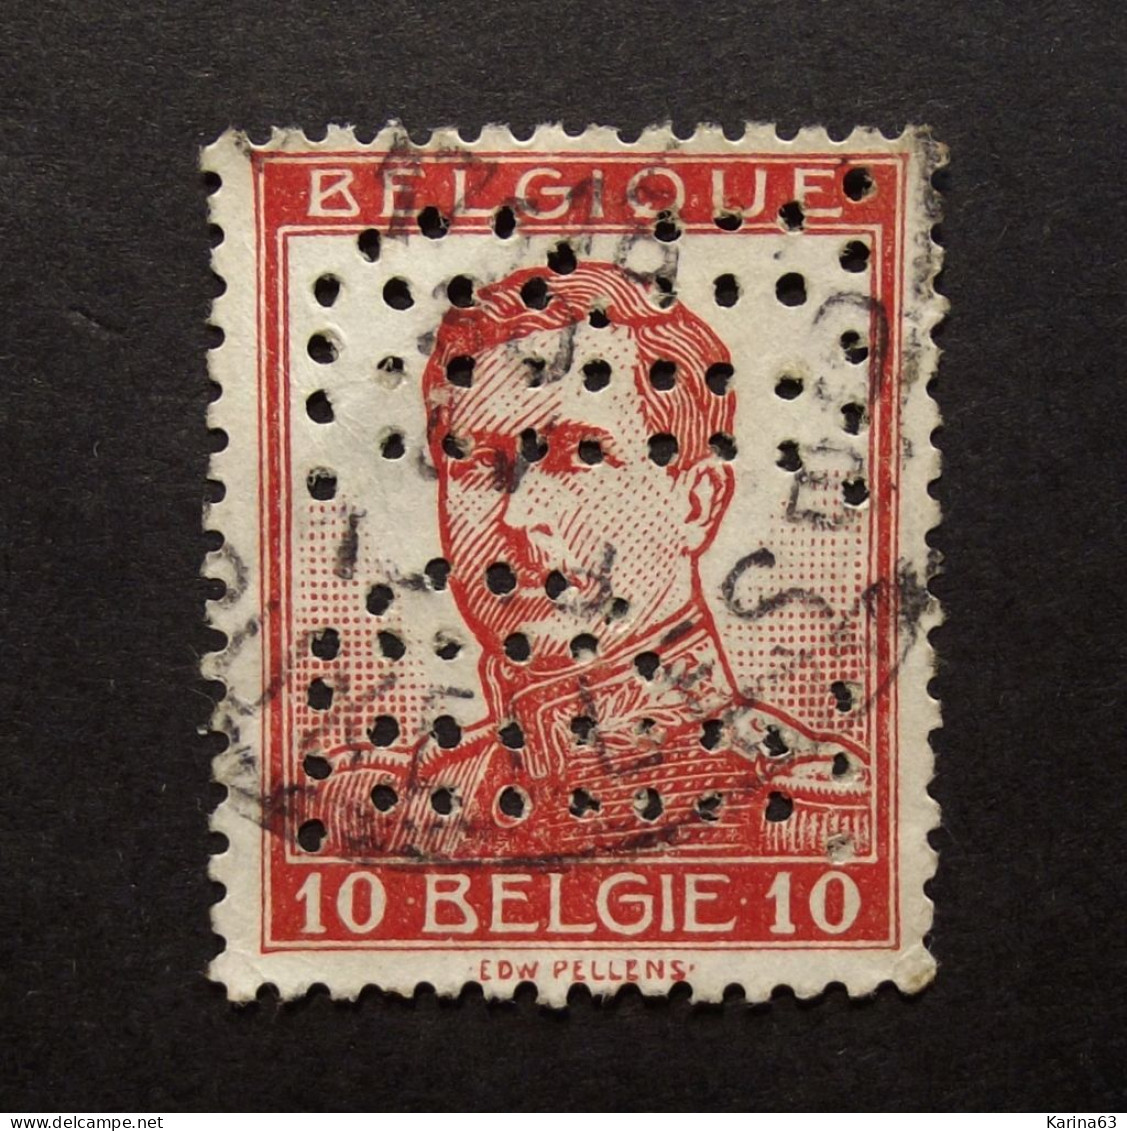 België - Belgique  Perfin - Perforé - P R - Cie D'Assurance Les Propriétaires Réunies, Liège - COB 123 Cancelled - 1909-34